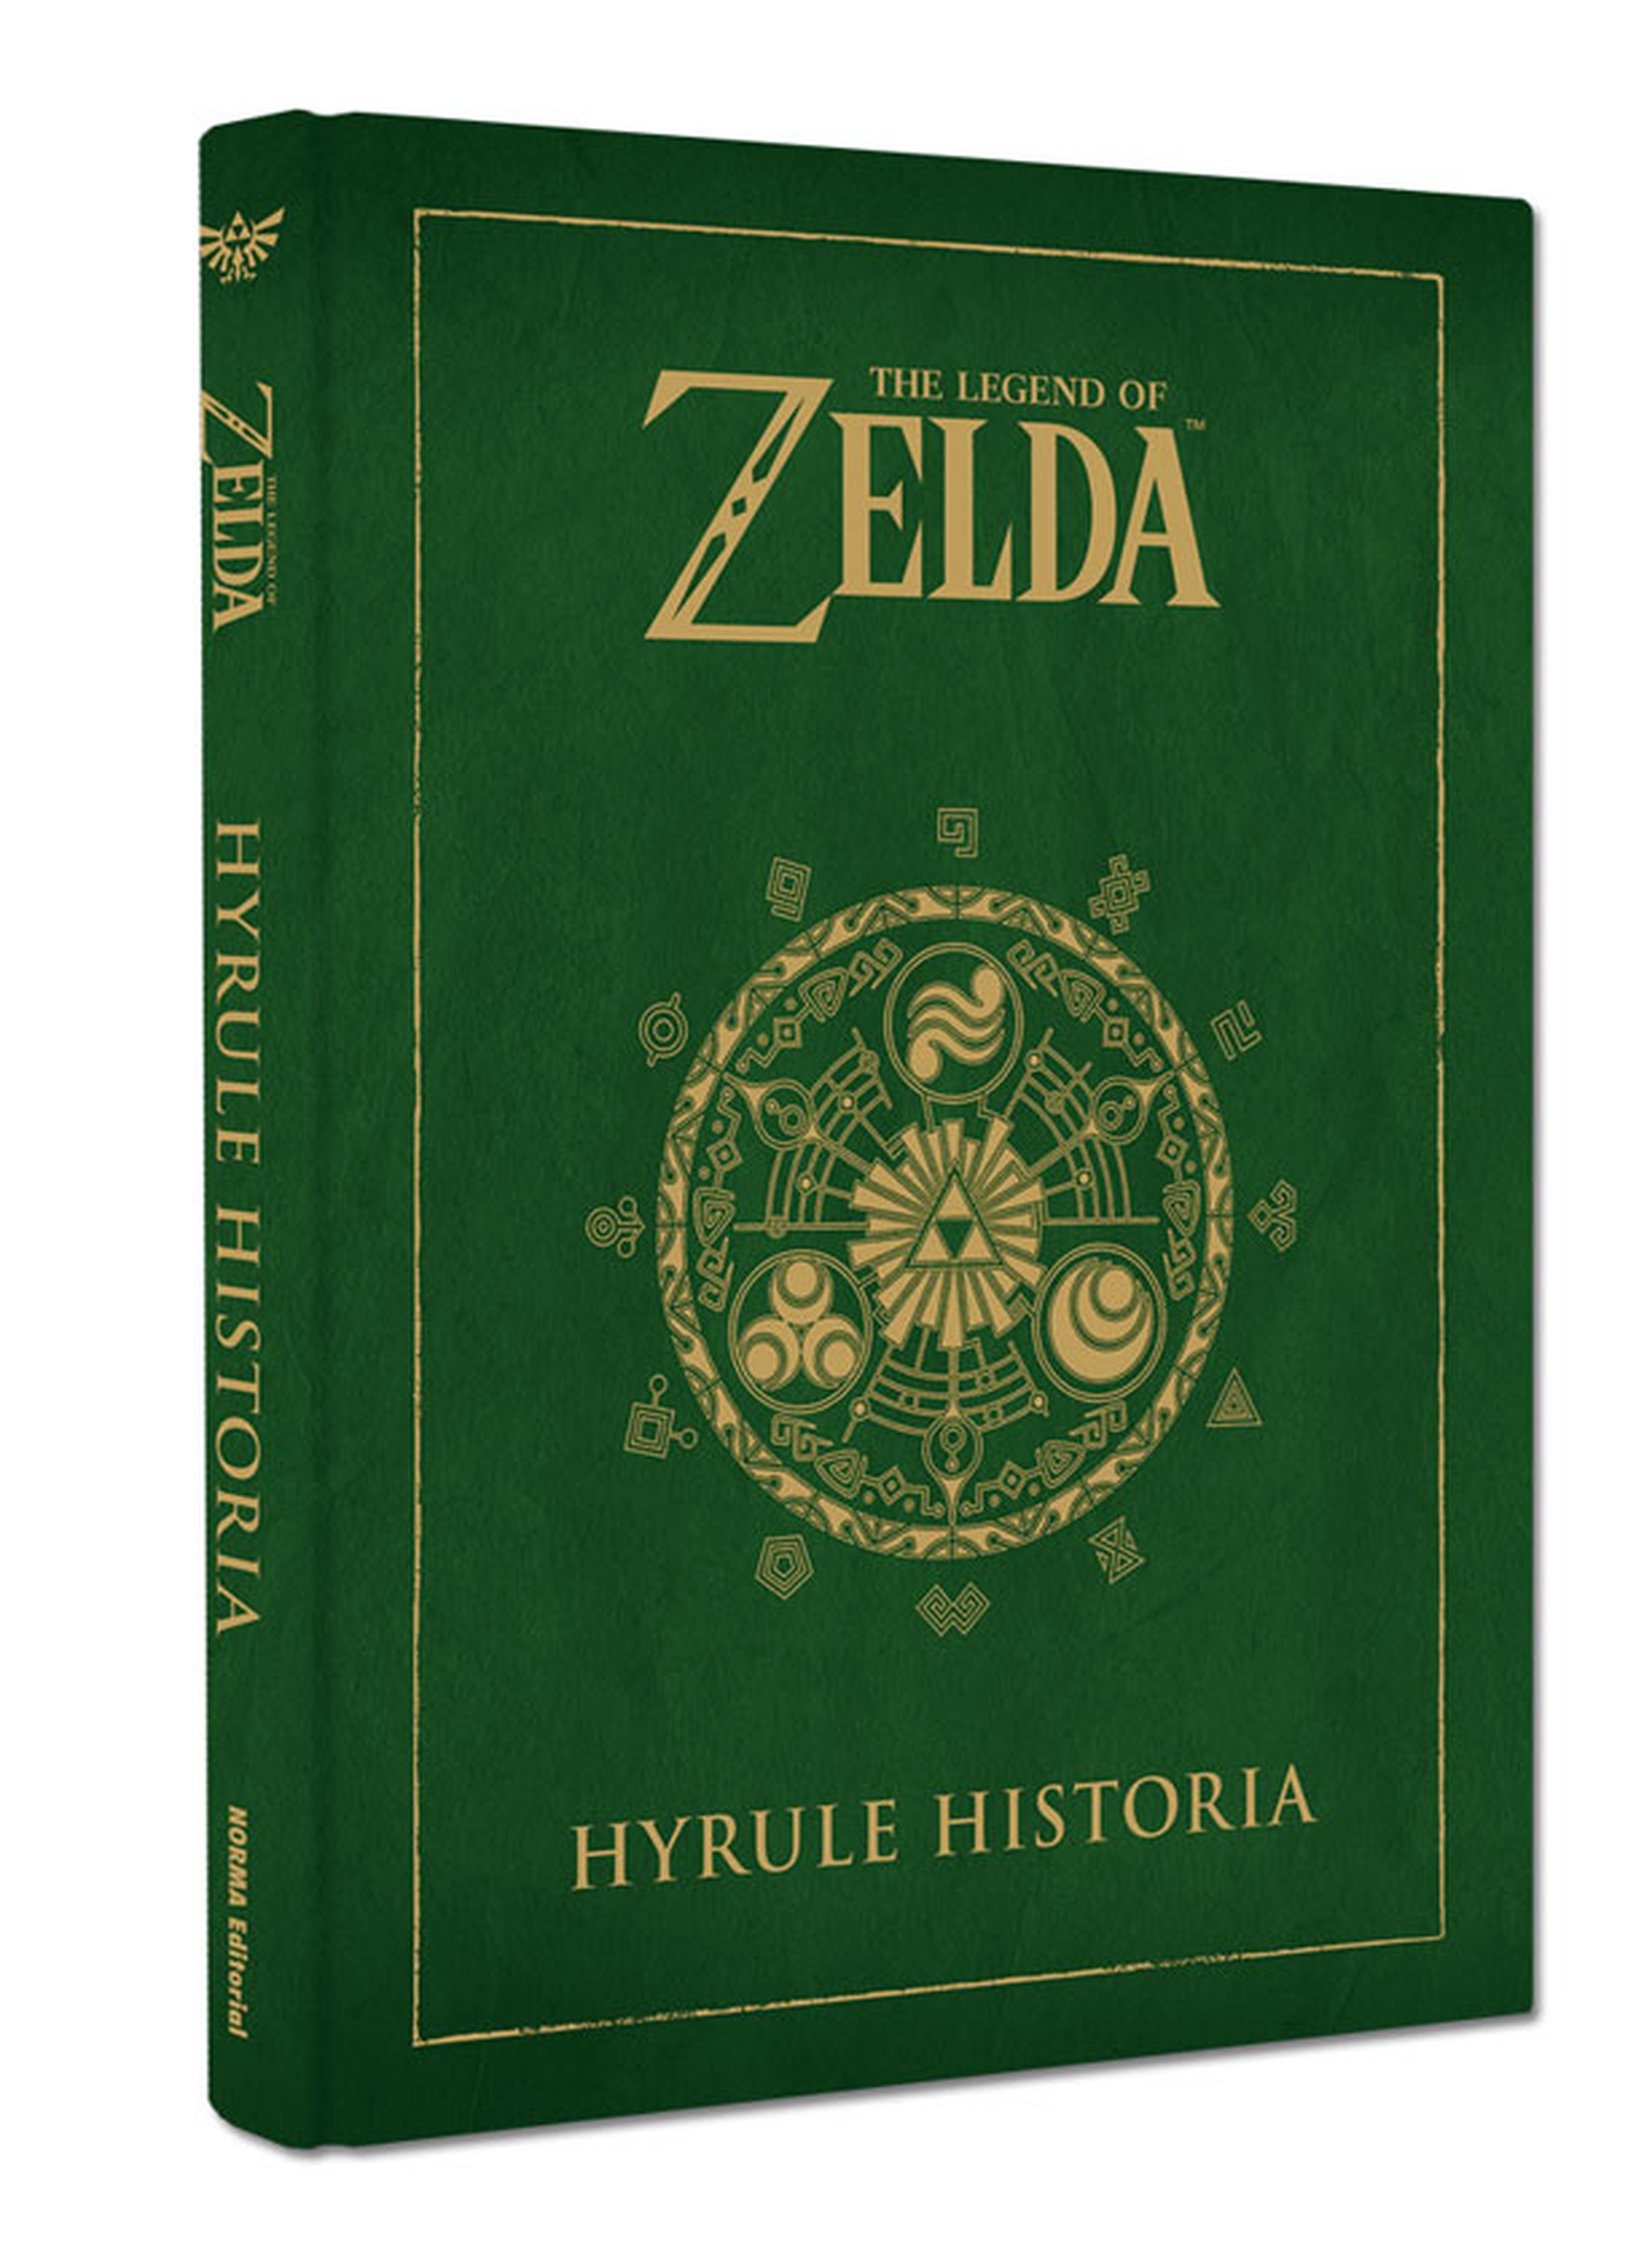 Hyrule Historia, al suscribirte a Revista Oficial Nintendo